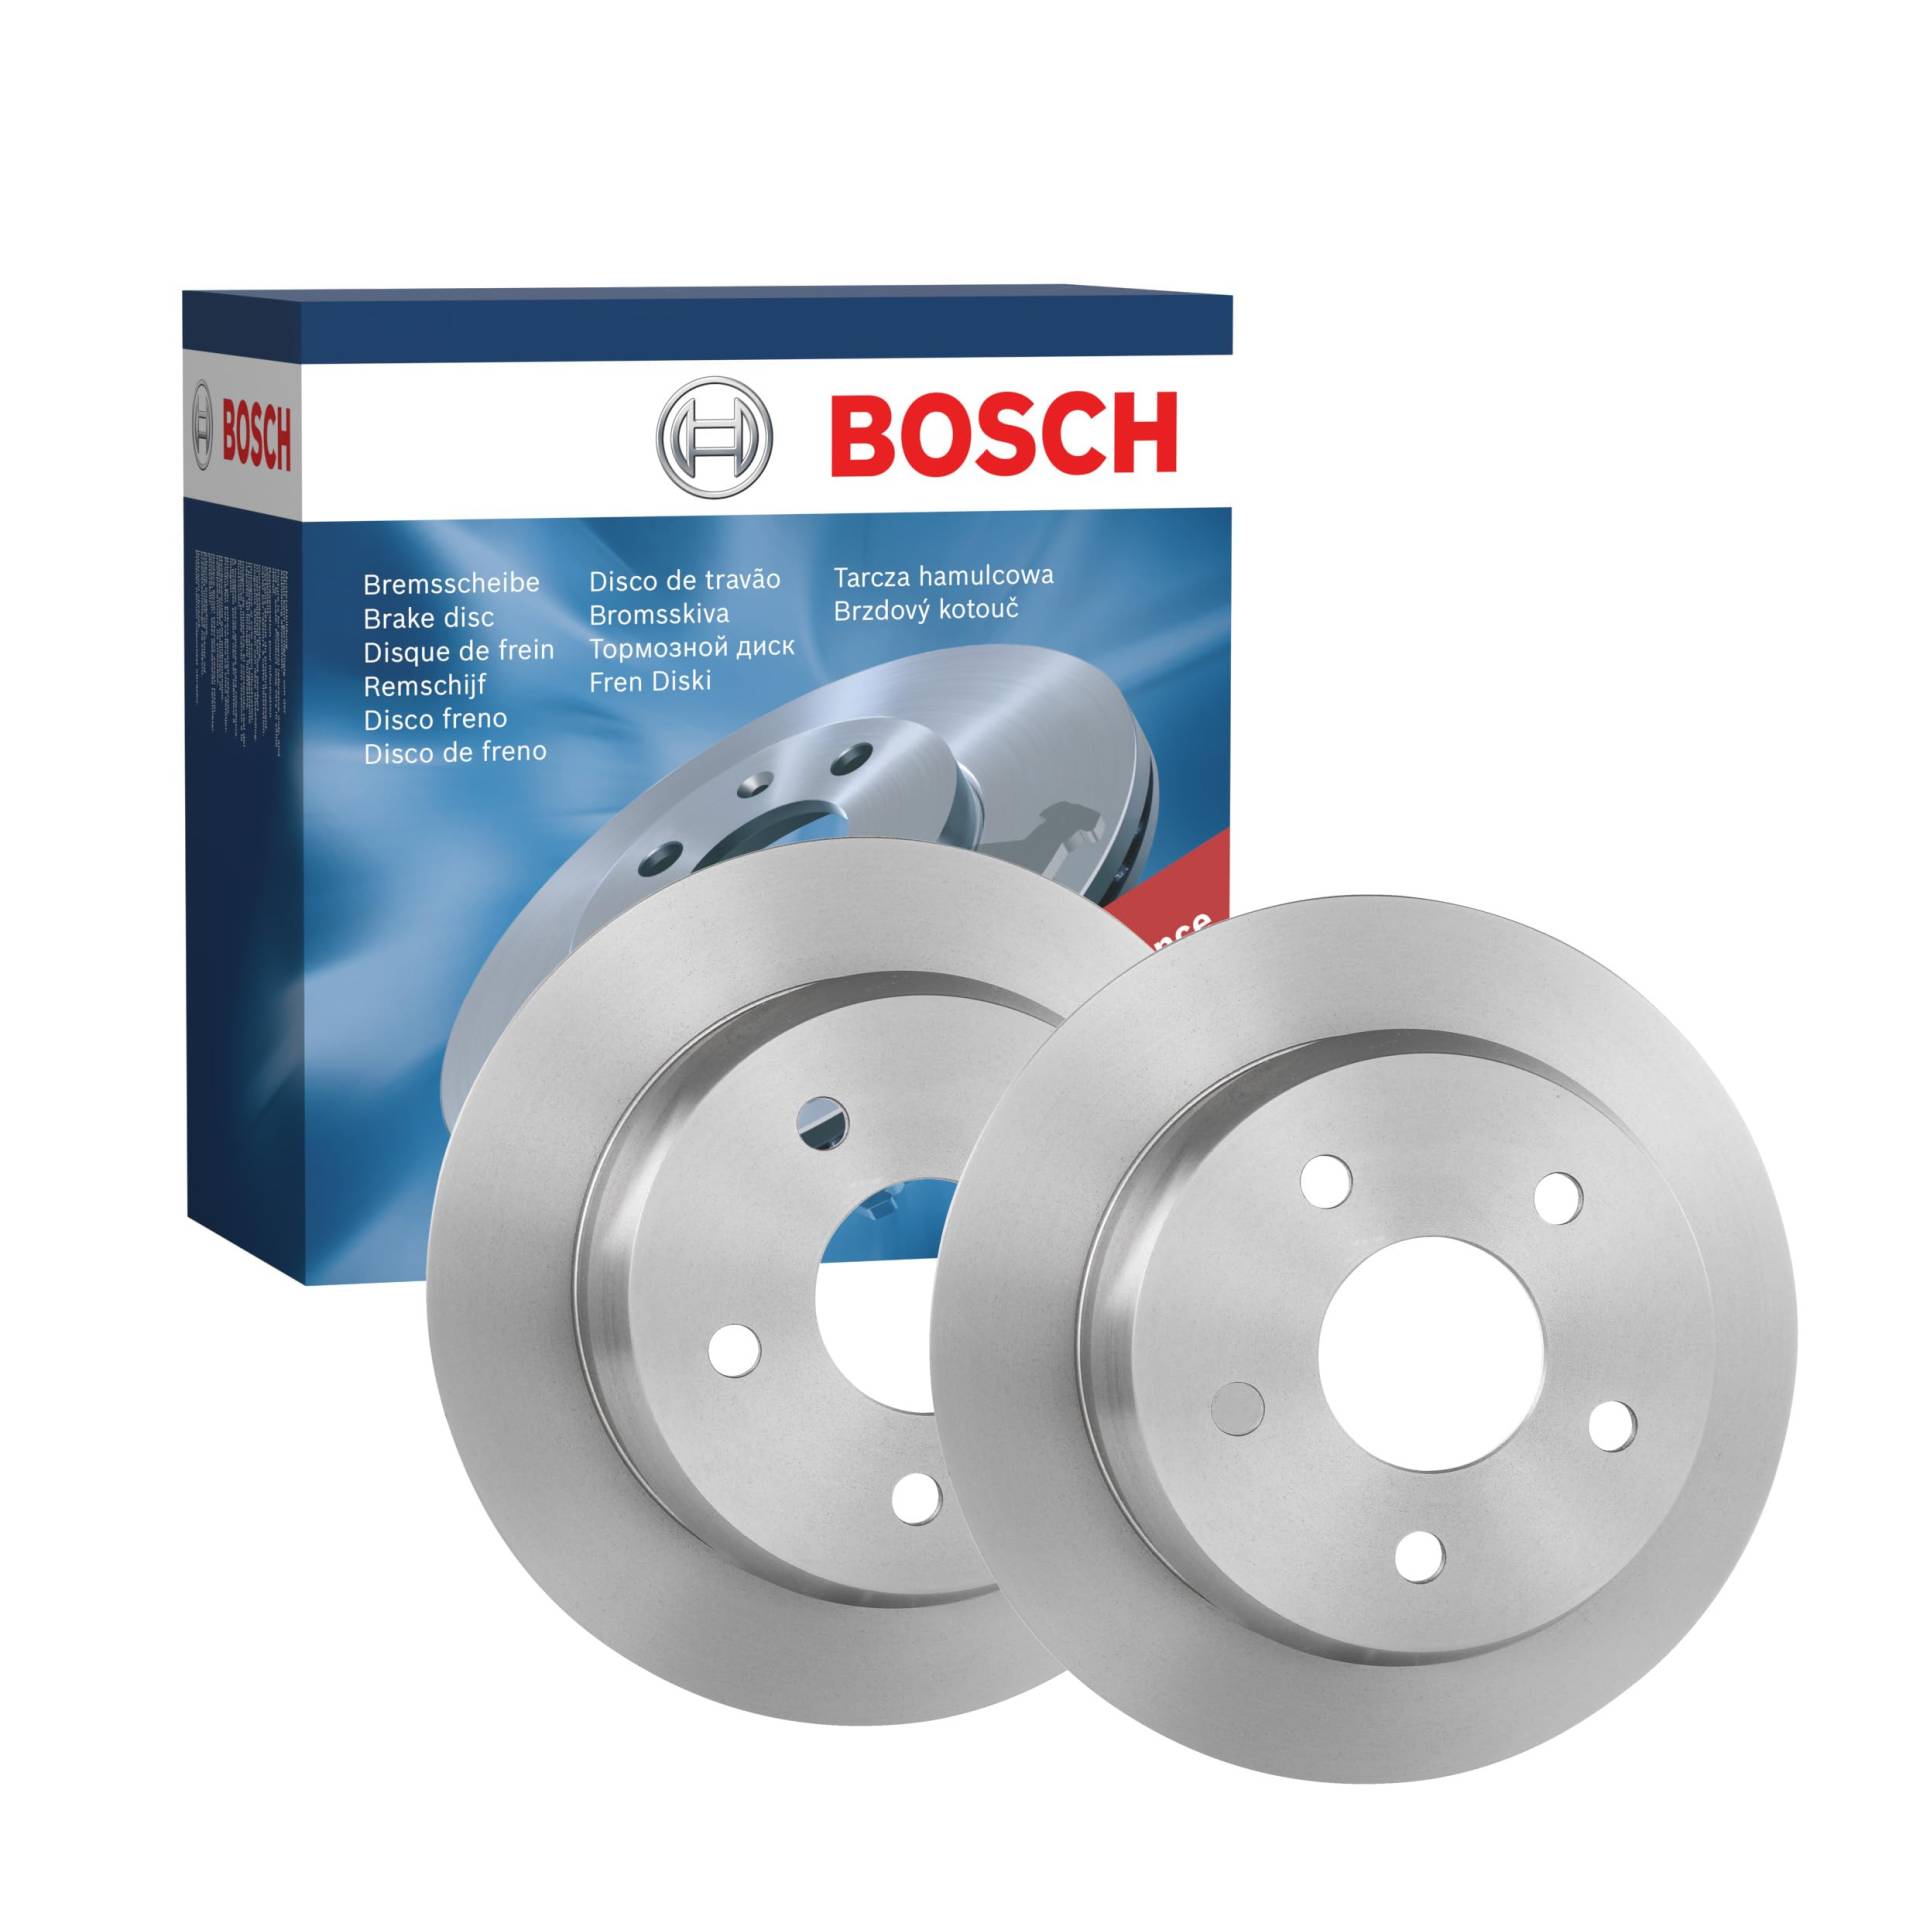 Bosch BD682 Bremsscheiben - Hinterachse - ECE-R90 Zertifizierung - zwei Bremsscheiben pro Set von Bosch Automotive